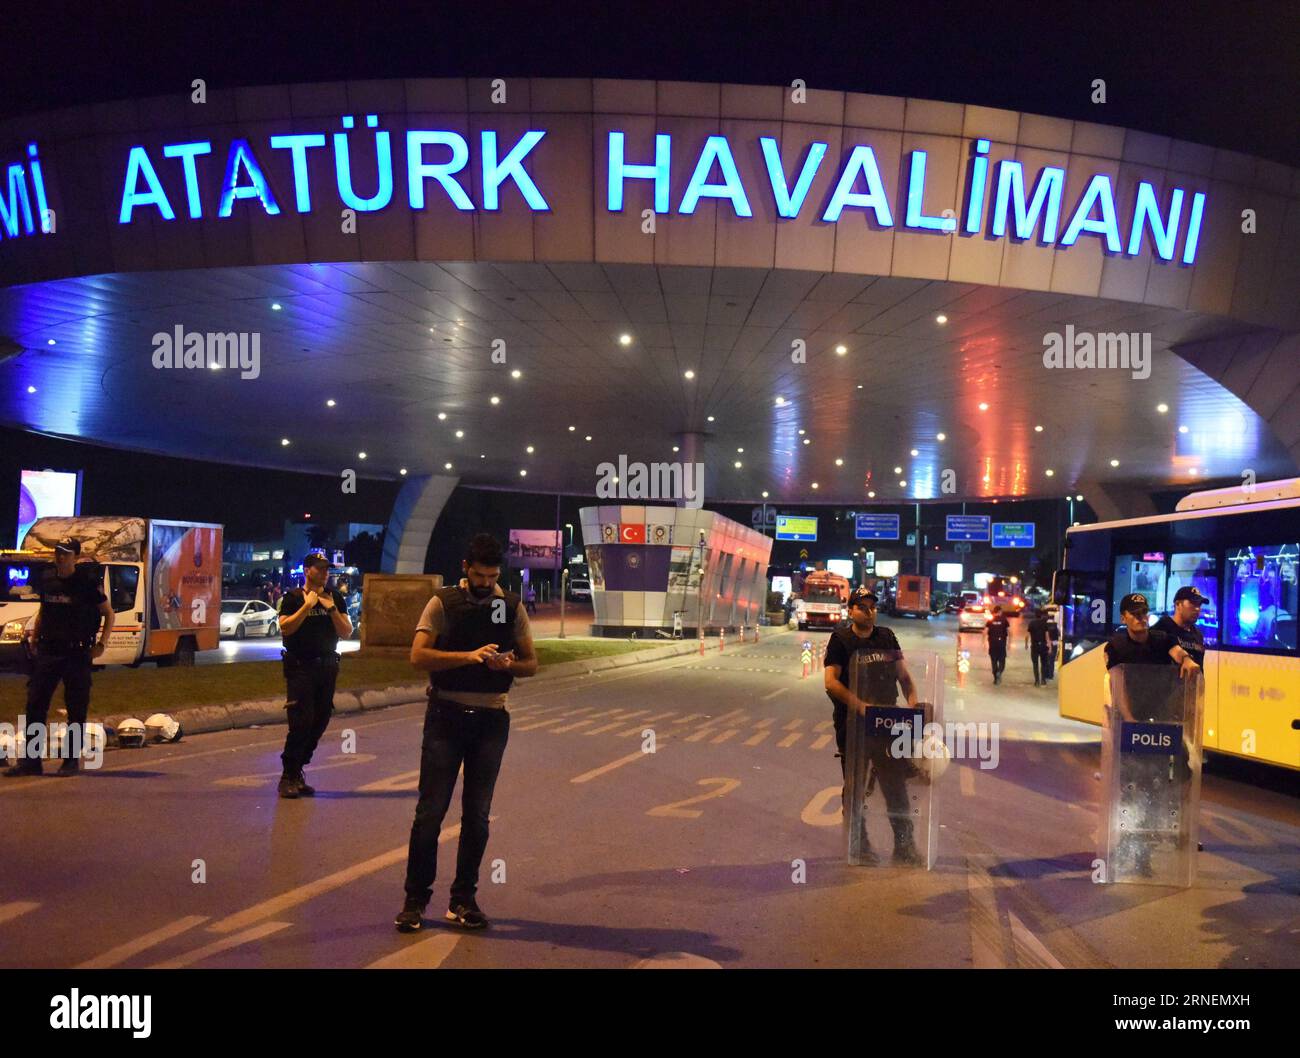 Bilder des Tages Türkei: Explosionen und Schüsse am Flughafen in Istanbul (160629) -- ISTANBUL, 29 giugno 2016 -- i poliziotti stanno di guardia all'ingresso dell'aeroporto internazionale Ataturk di Istanbul, Turchia, 29 giugno 2016. Mercoledì il primo ministro turco Binali Yildirim ha incolpato lo Stato islamico per gli attentati che hanno ucciso 36 persone all'aeroporto martedì sera. ) TURCHIA-ISTANBUL-AEROPORTO-ESPLOSIONI HexCanling PUBLICATIONxNOTxINxCHN immagini il giorno in cui la Turchia esplosioni e spari all'aeroporto di Istanbul 160629 Istanbul giugno 29 2016 i poliziotti stanno di guardia ALL'ingresso dell'ATATURK Internatio Foto Stock